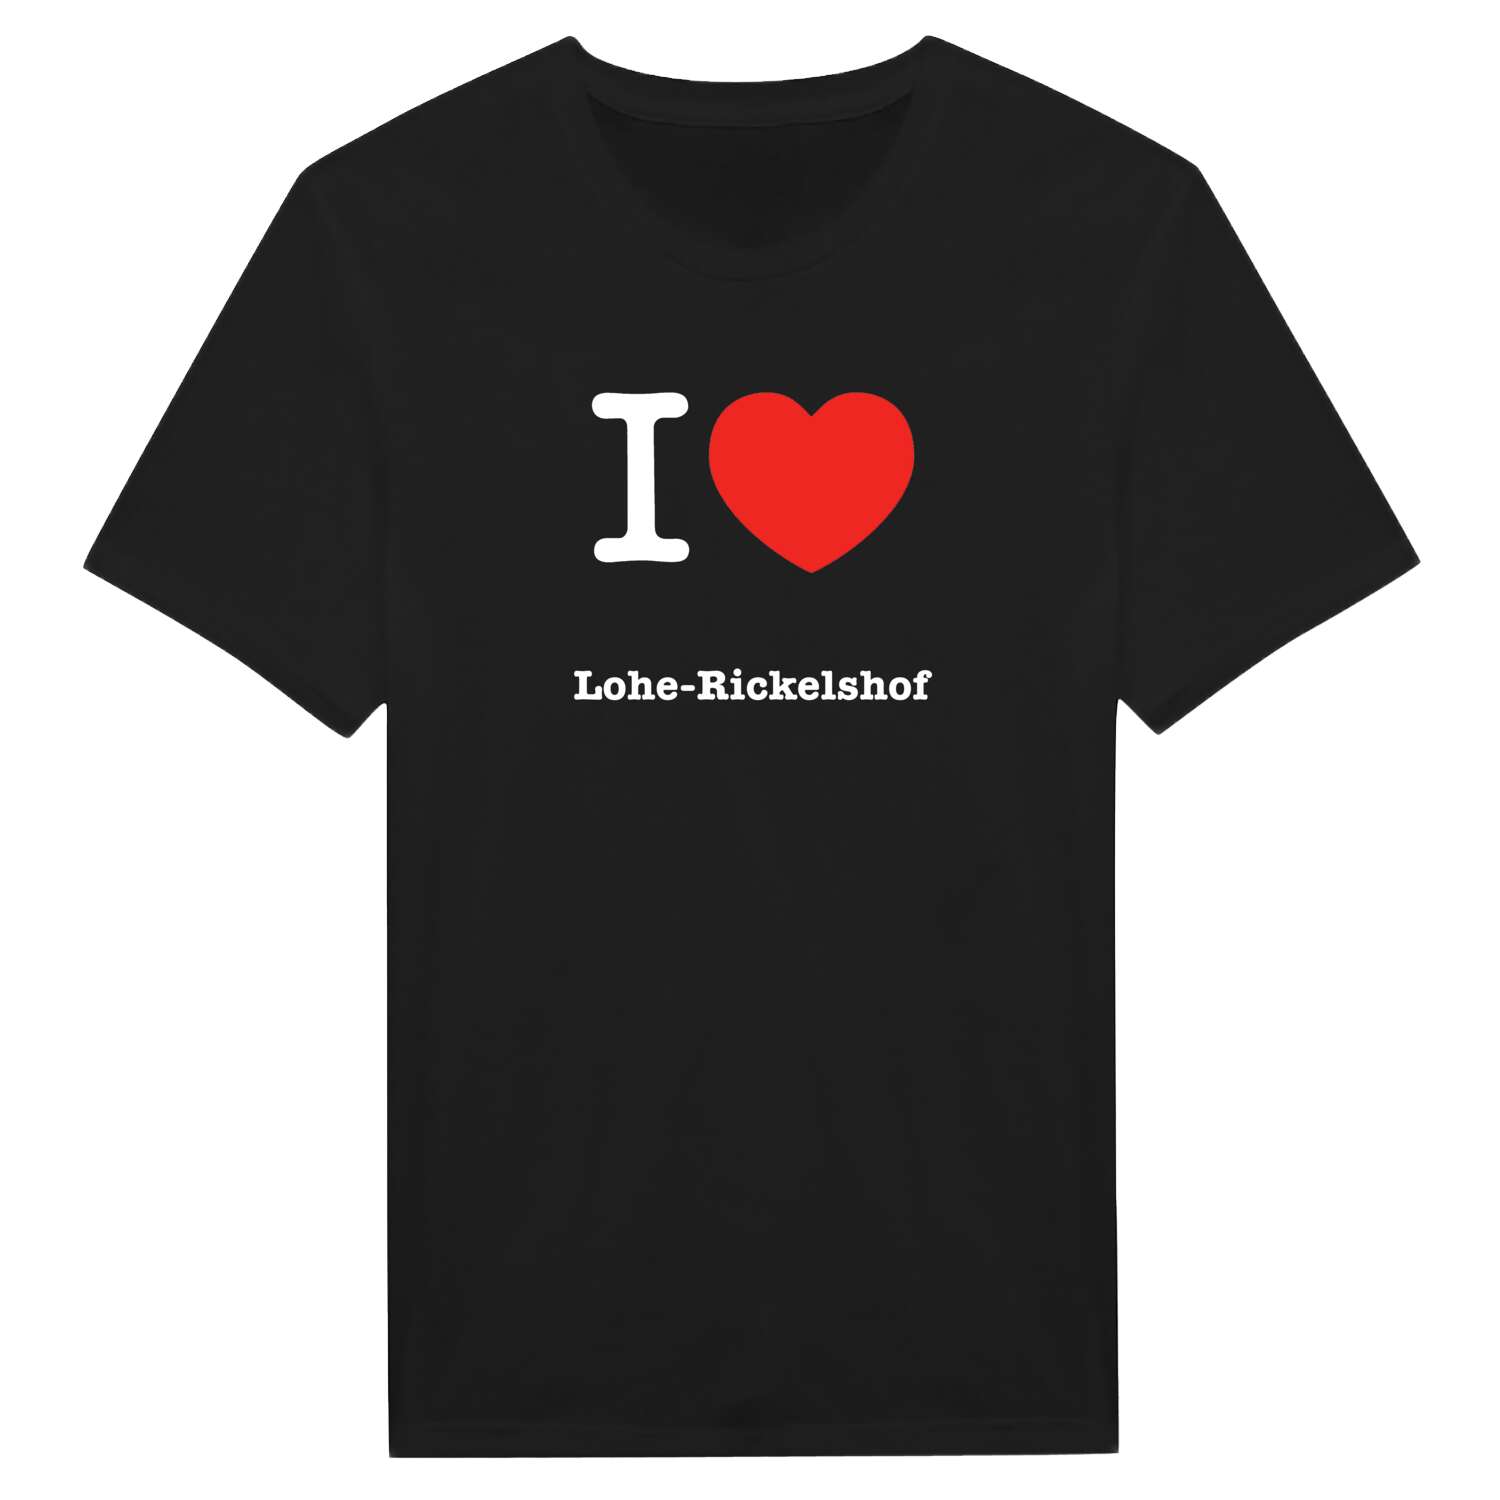 Lohe-Rickelshof T-Shirt »I love«